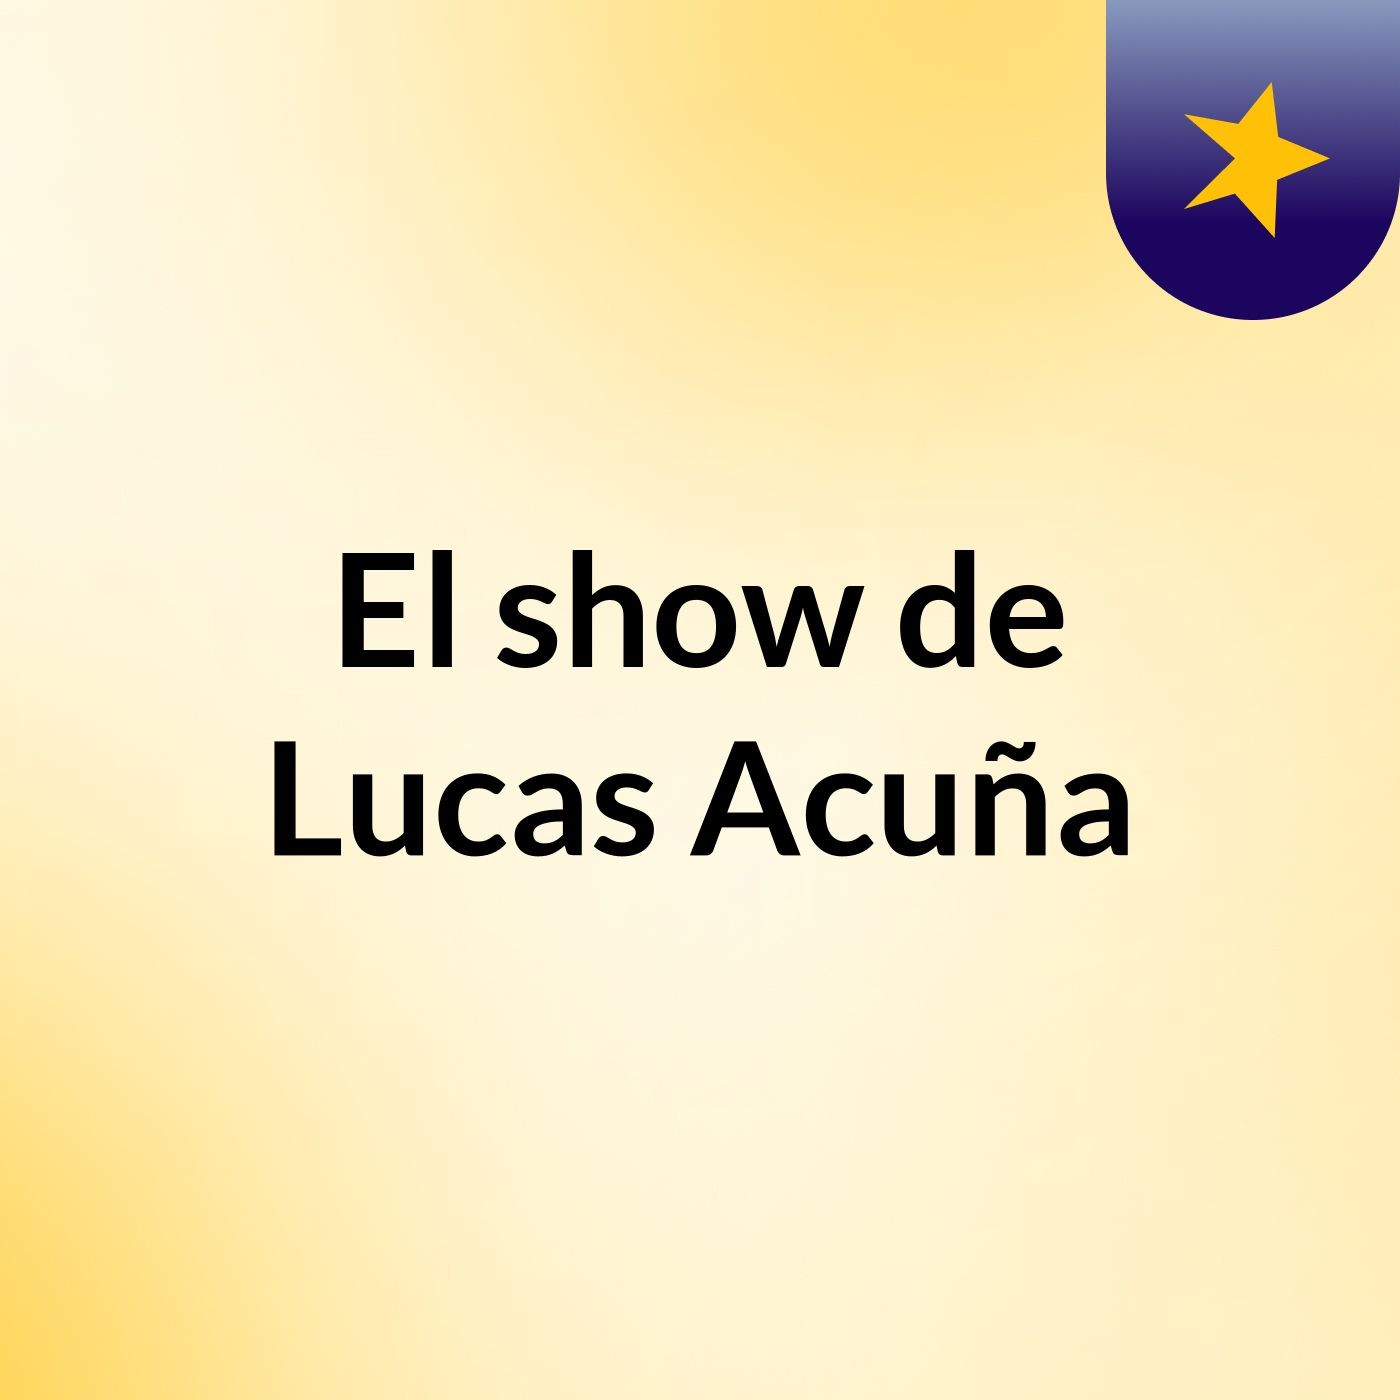 El show de Lucas Acuña